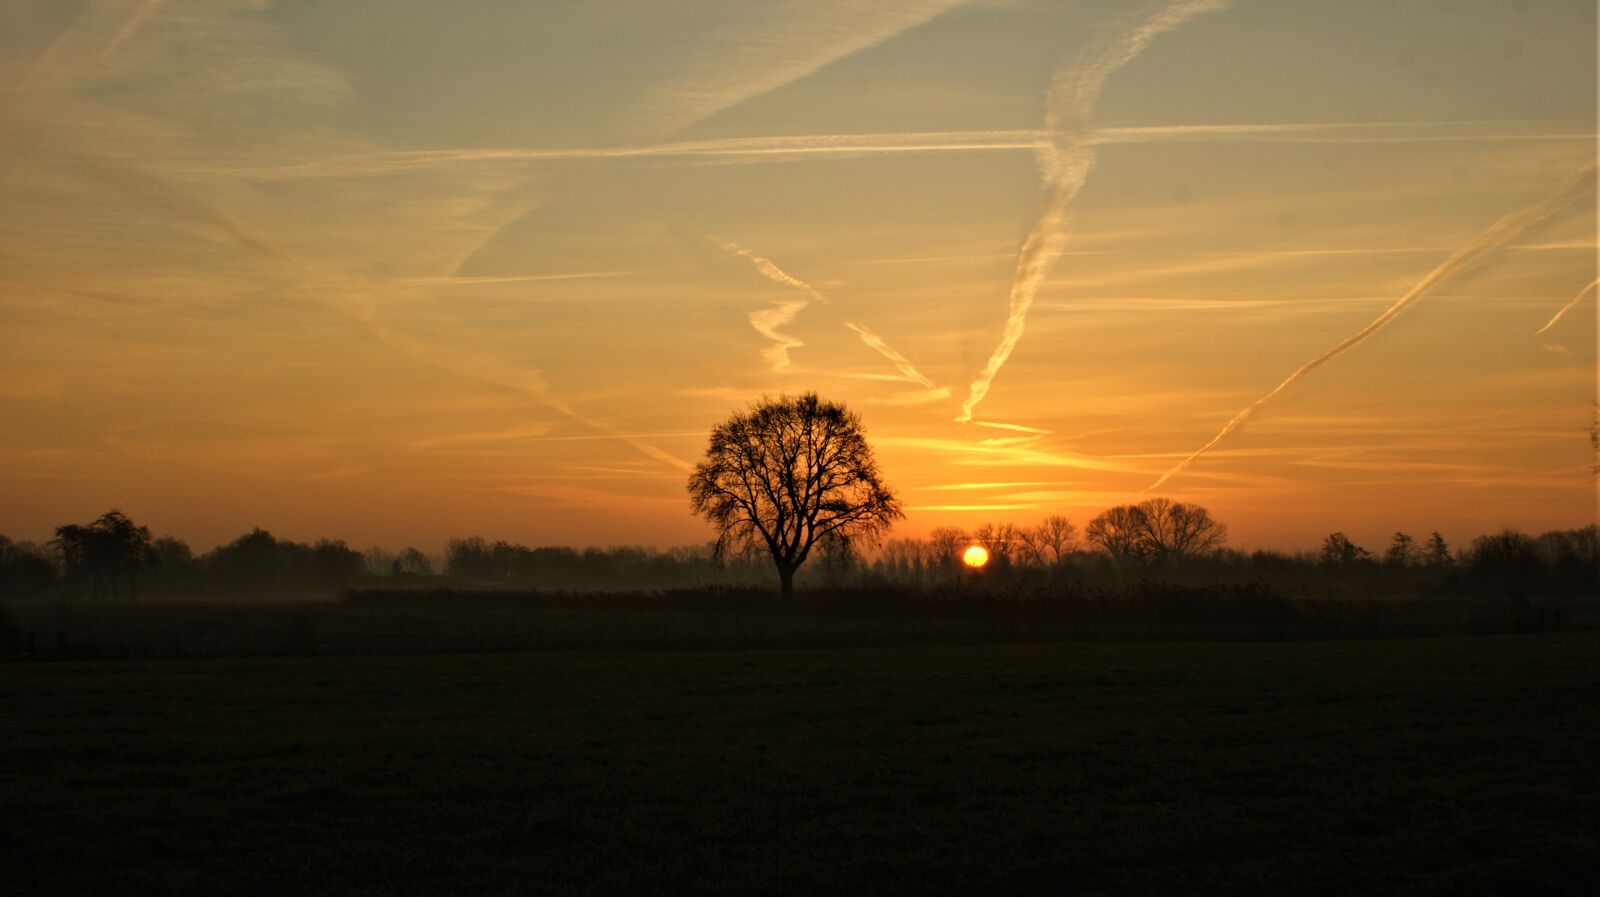 Sony Alpha DSLR-A350 sample photo. Tree, sunrise, landscape photography